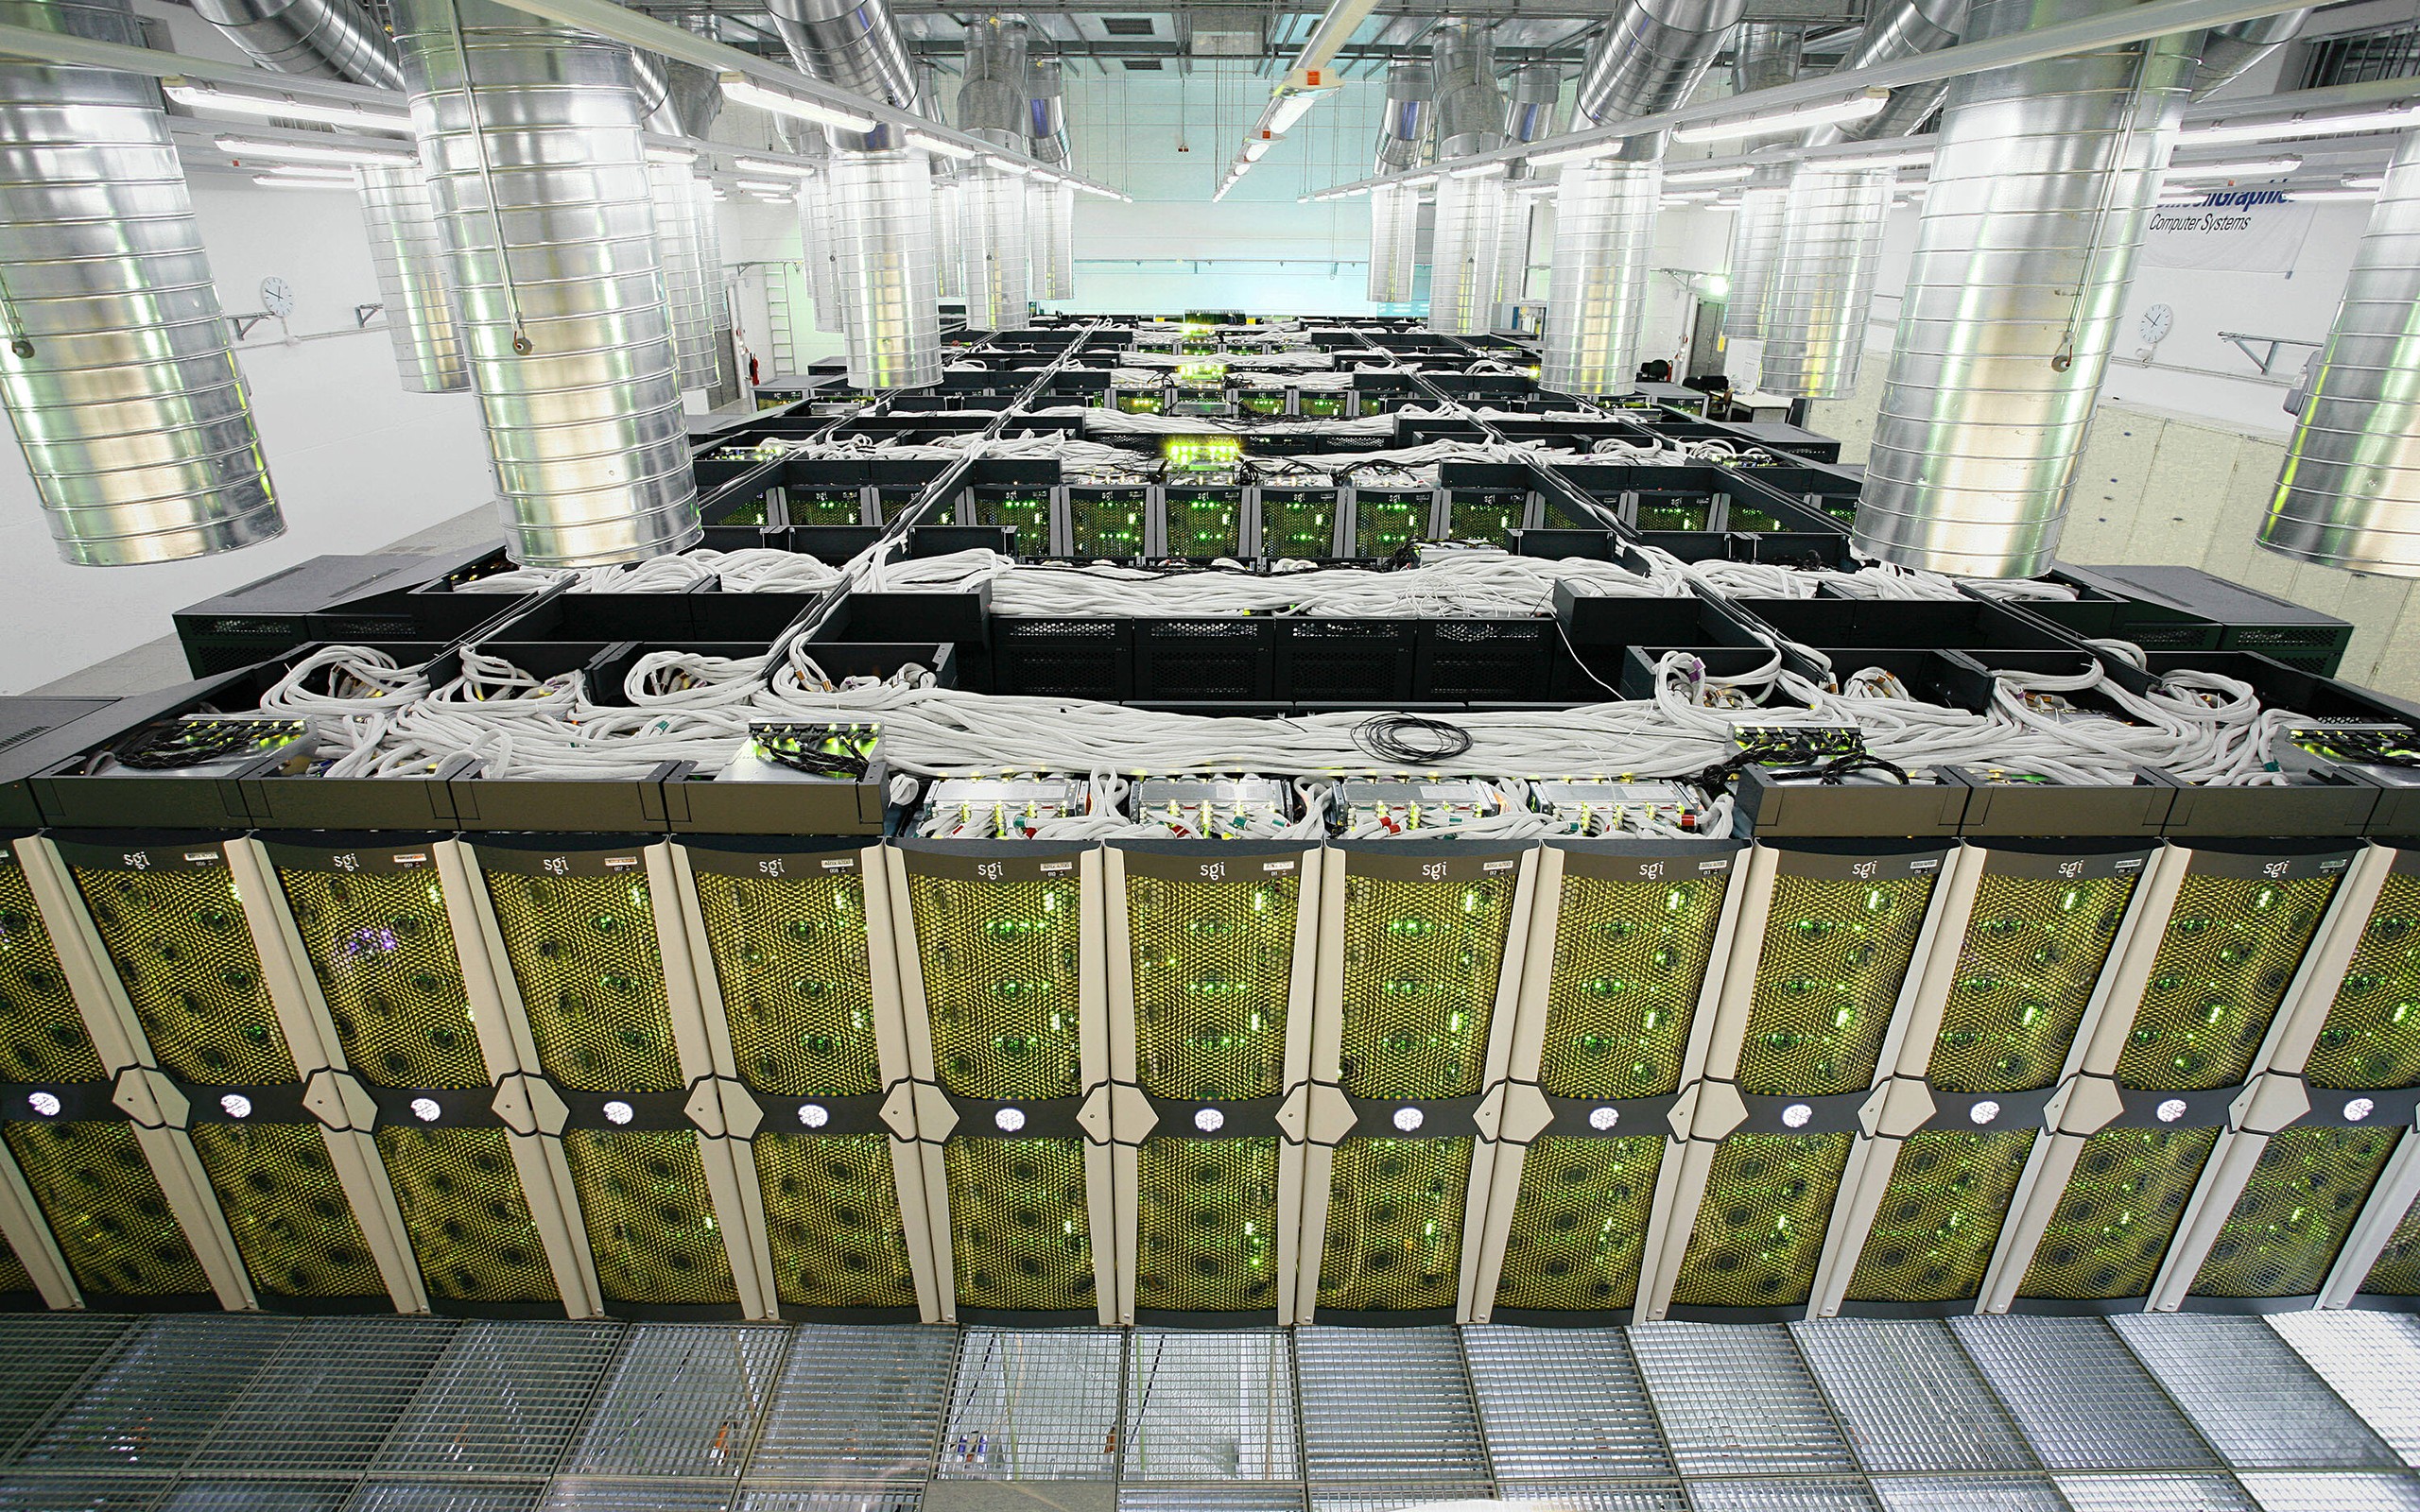 General 2560x1600 server computer network technology data center datacenter